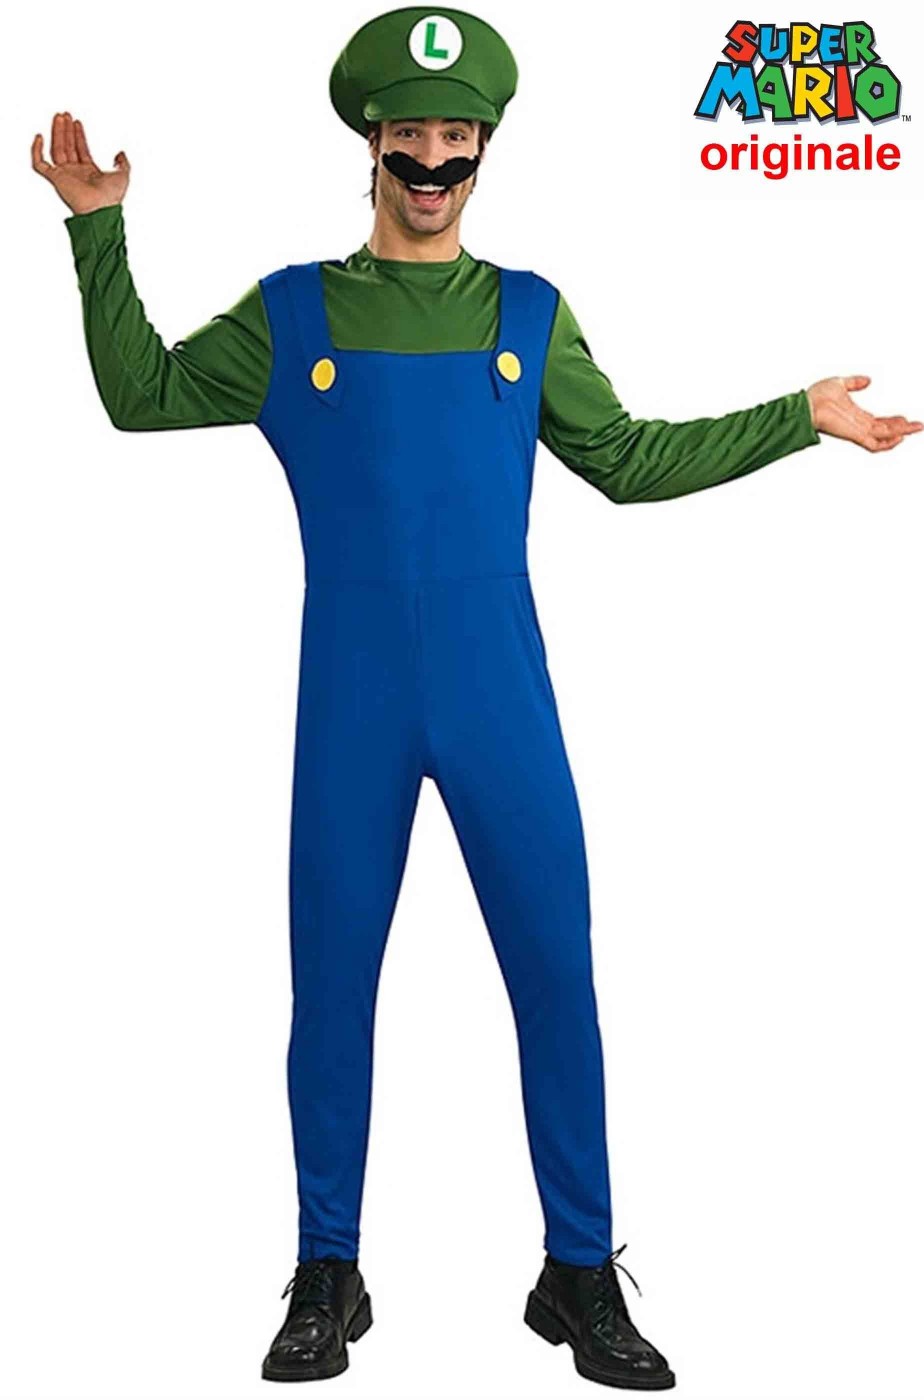 Costume Super Luigi di Supermario bros originale